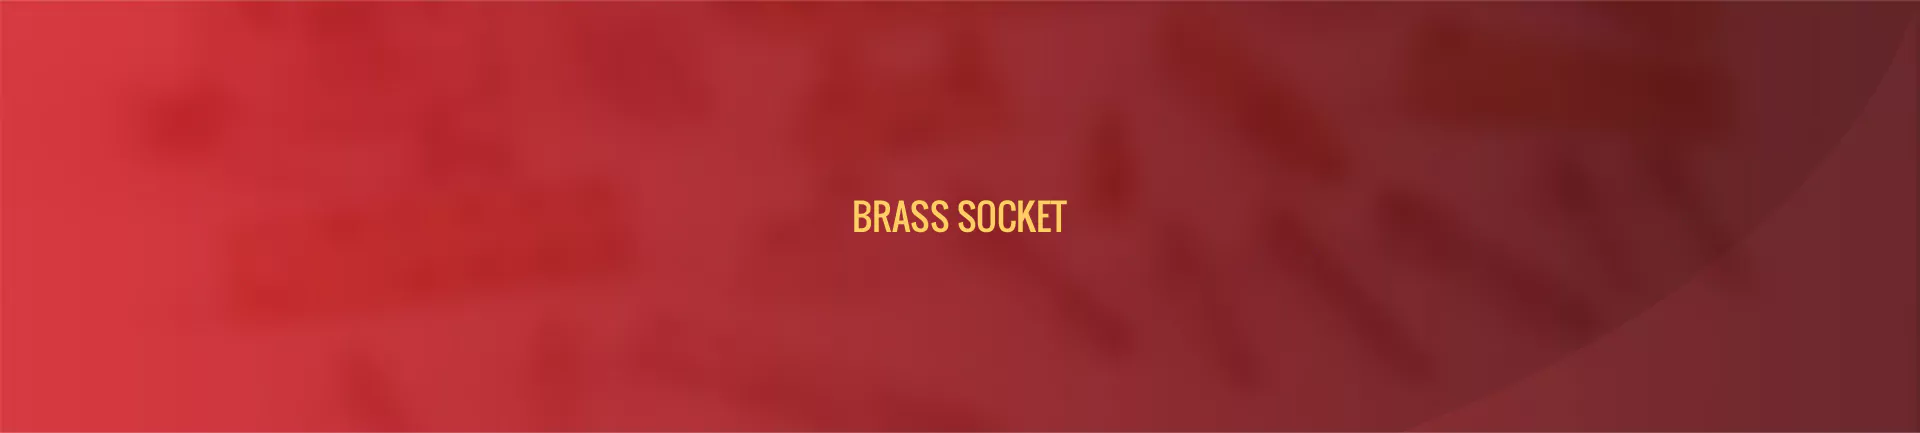 brass_socket-banner